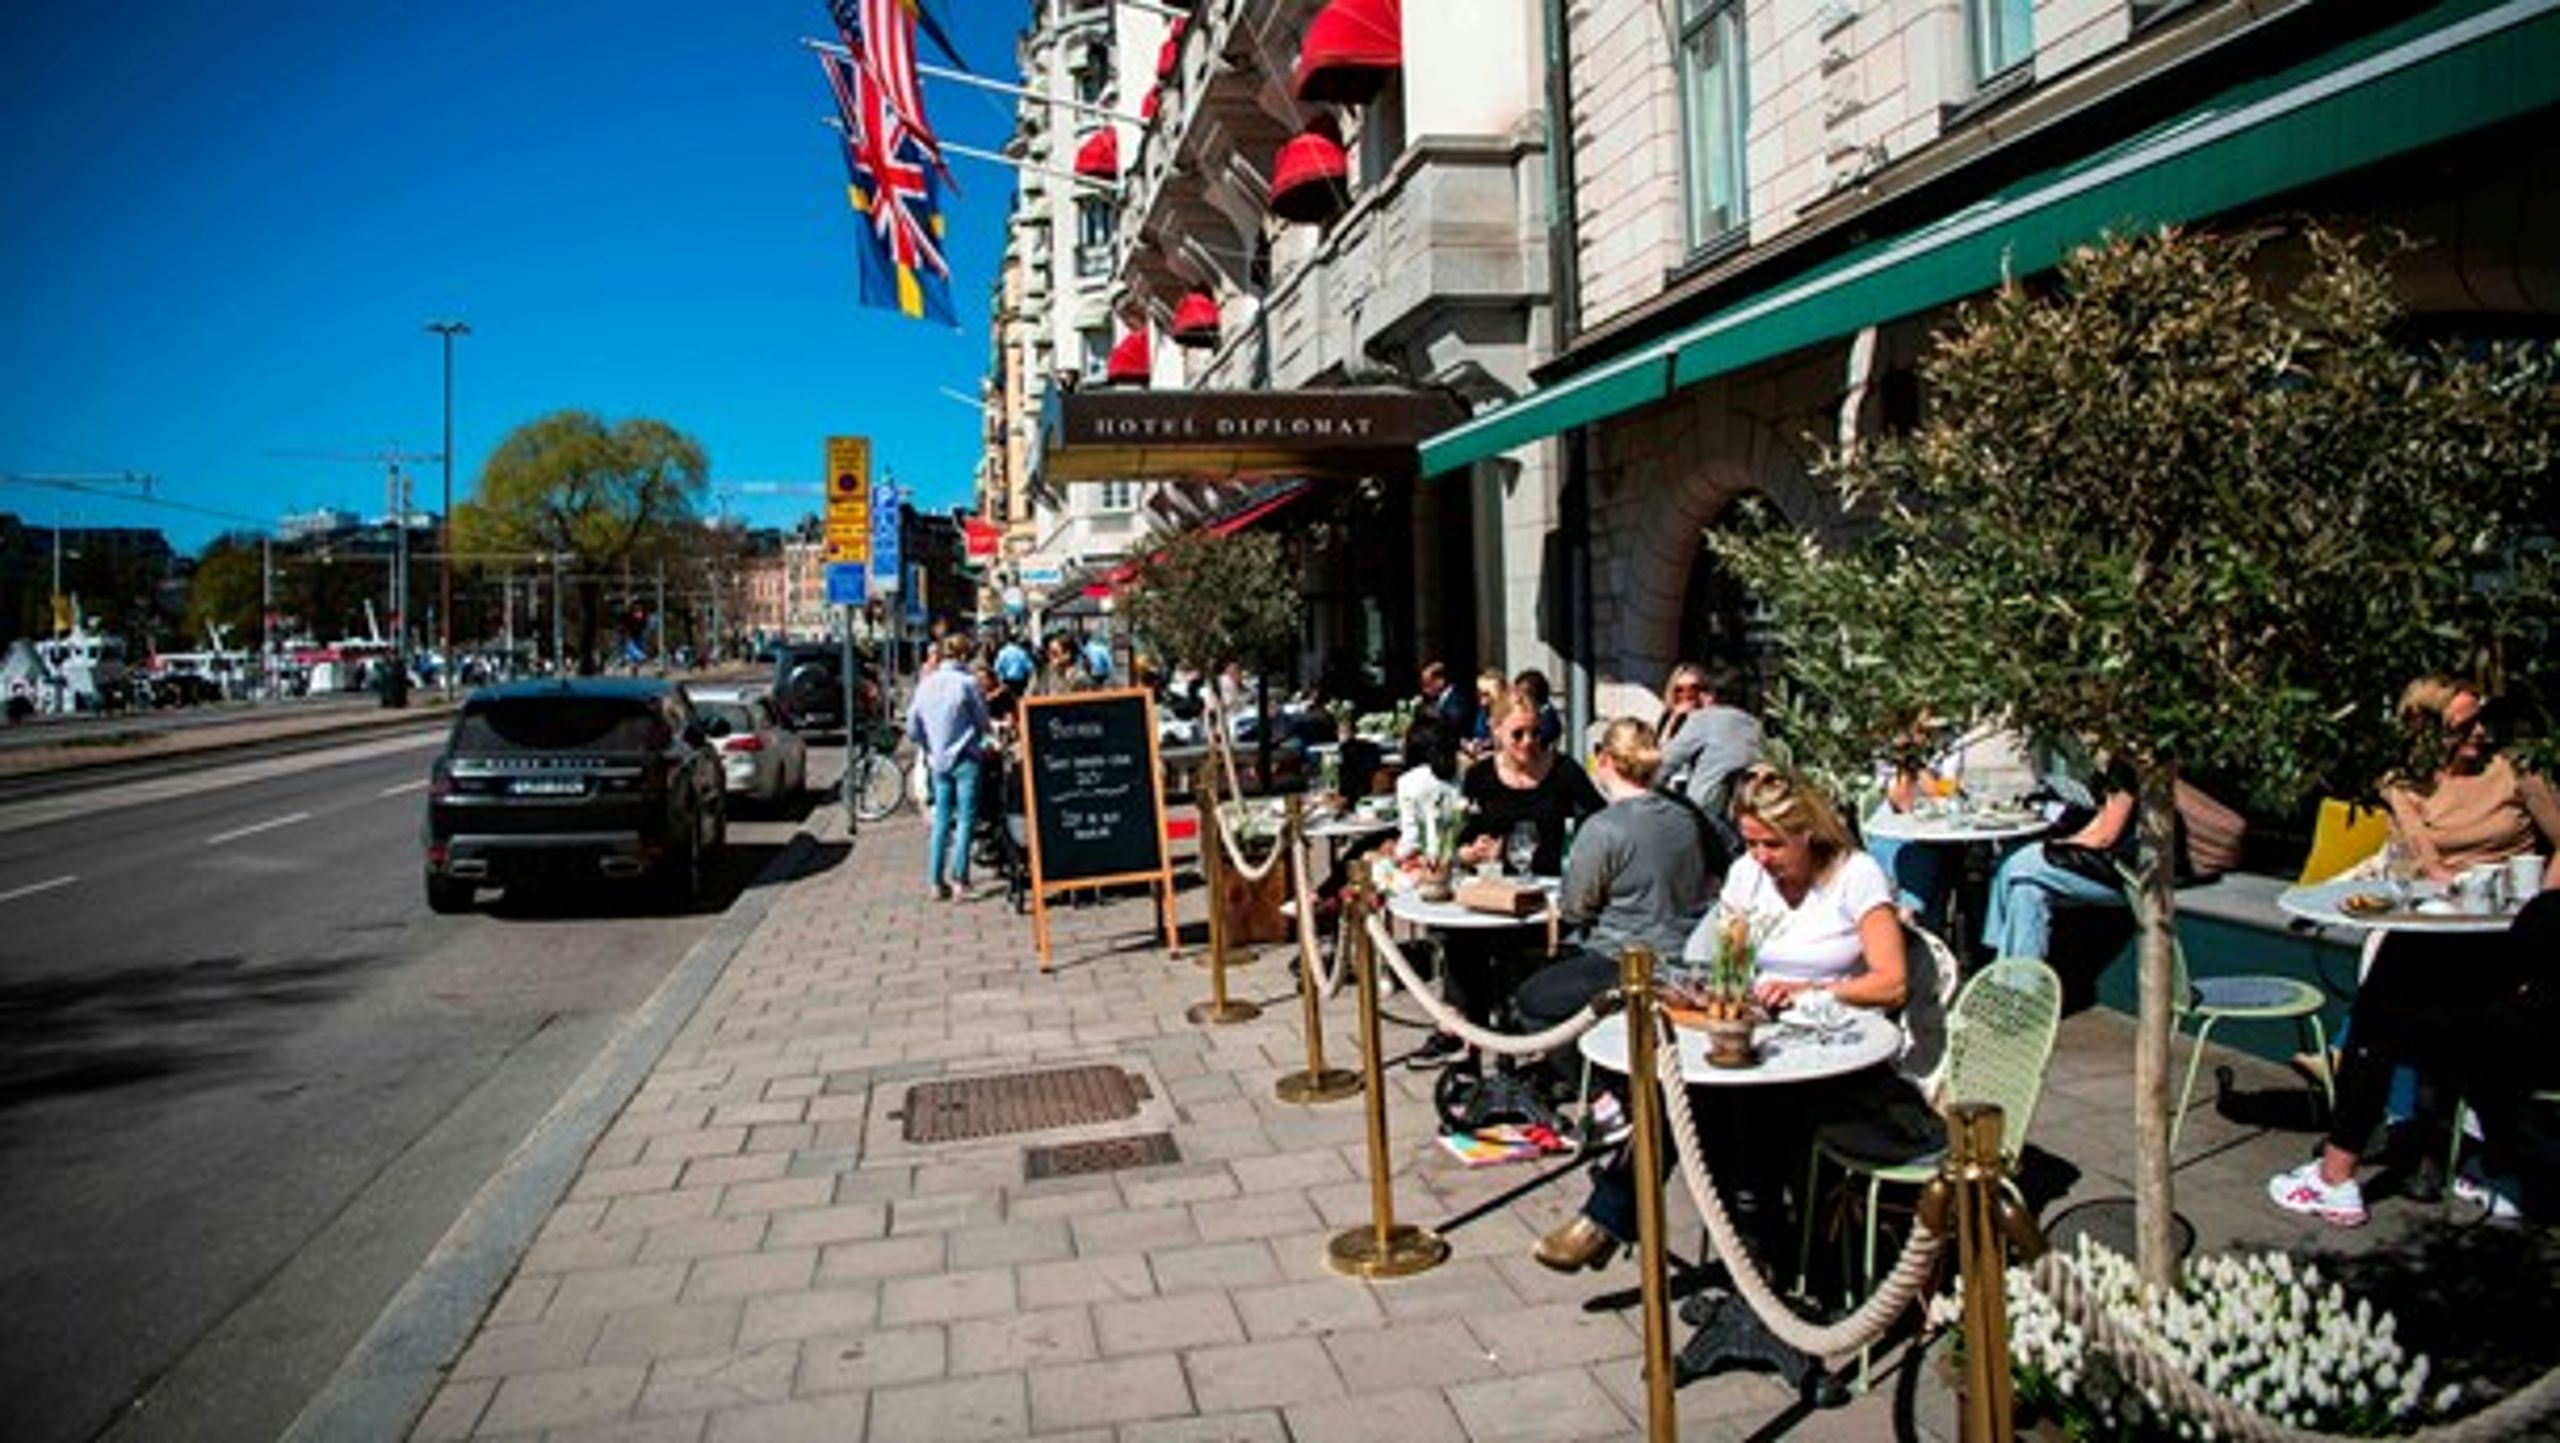 Mens alverdens restauranter og caféer har måttet holde dørene lukket de seneste uger, har det set anderledes ud i Sverige. Men gentagne gange er befolkningen blevet opfordret til at holde afstand, undgå offentlig transport og arbejde hjemme.